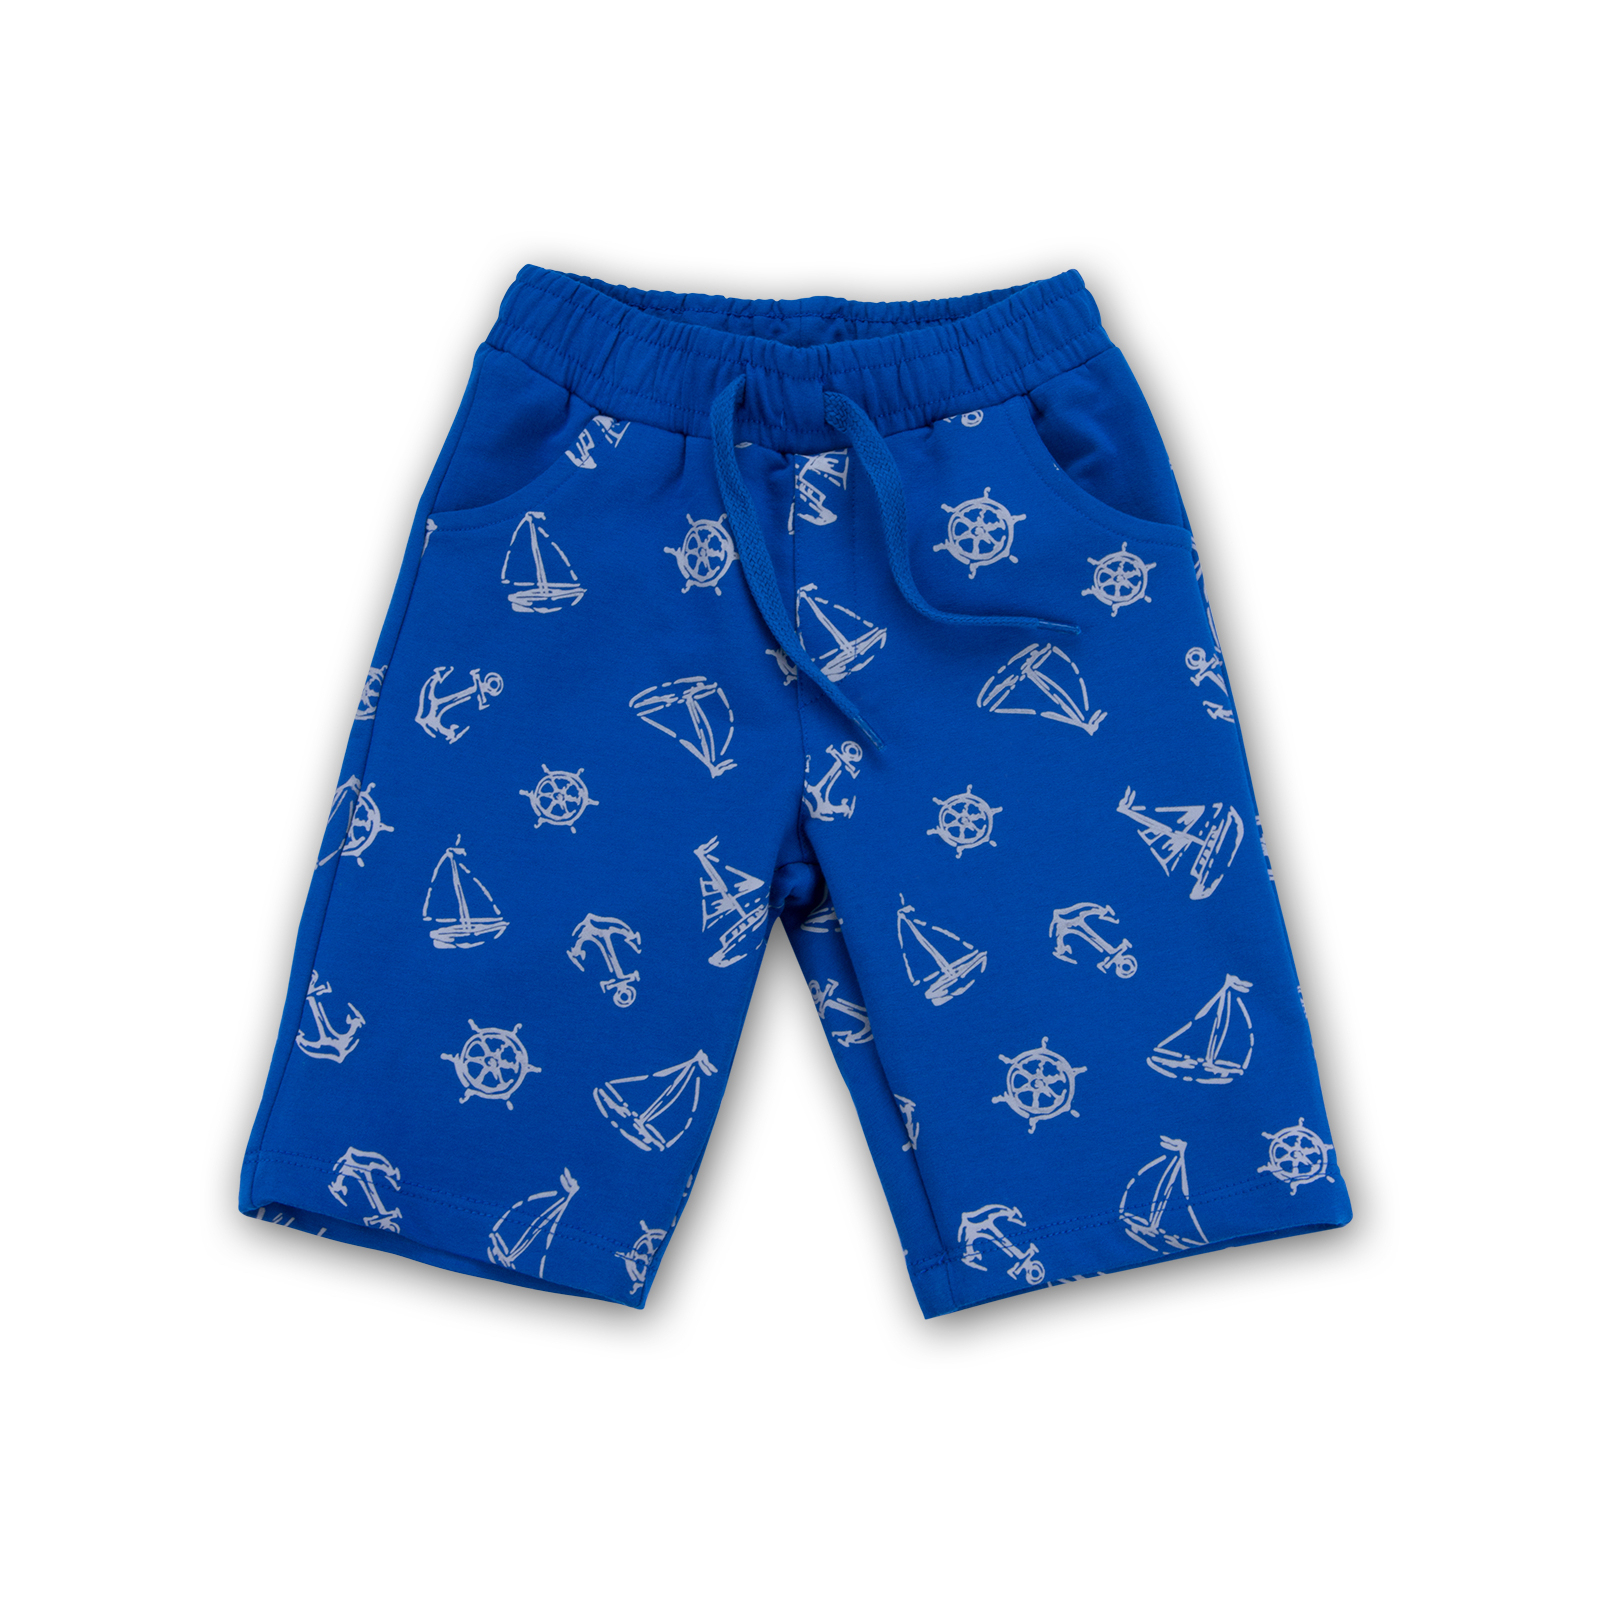 Набор детской одежды E&H с корабликами "I'm the captain" (8306-92B-blue) изображение 3